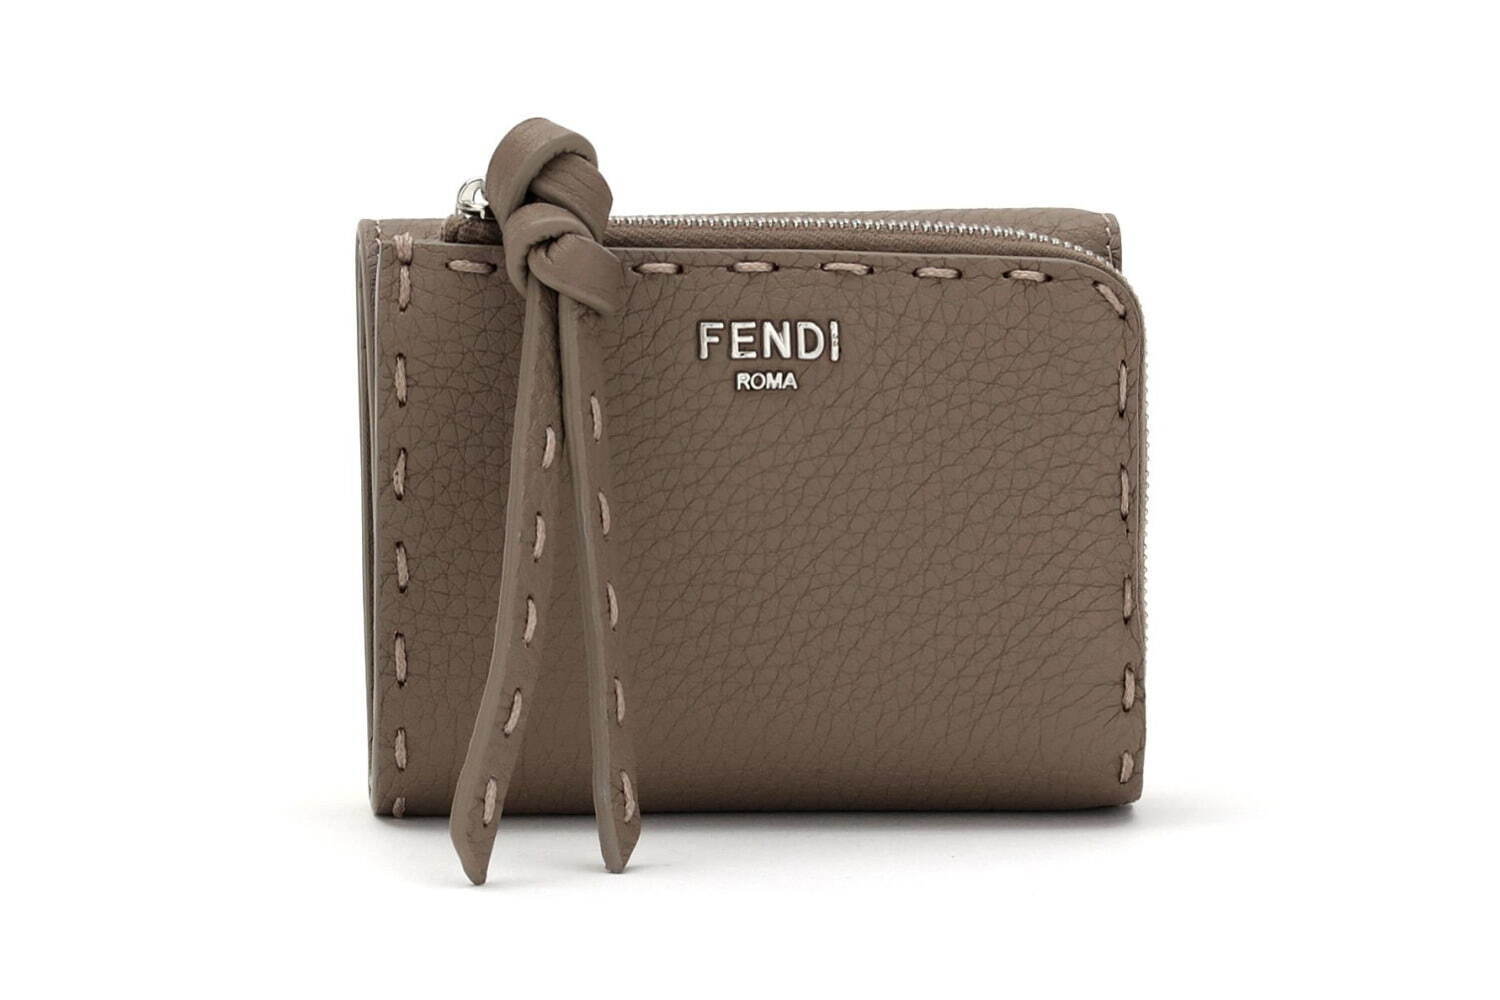 FENDIピーカブー財布幅約105cm